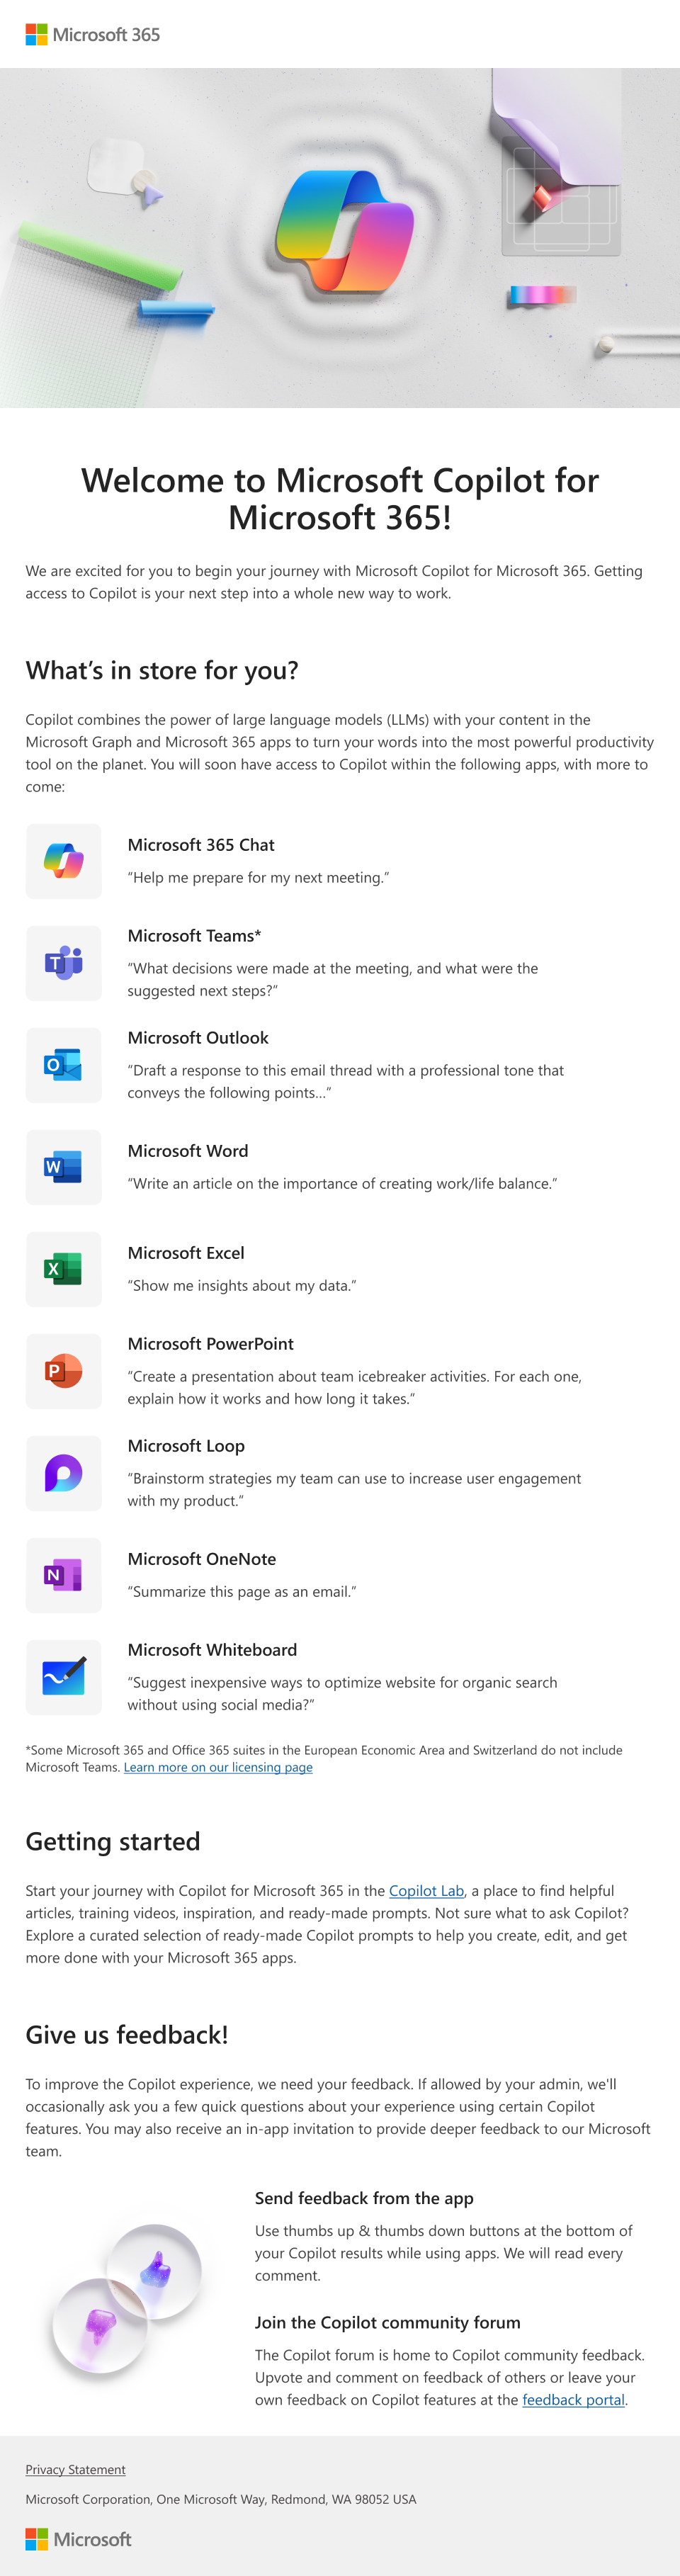 管理者がユーザーに提供できるMicrosoft Copilot for Microsoft 365とその機能を紹介する電子メールの画像。